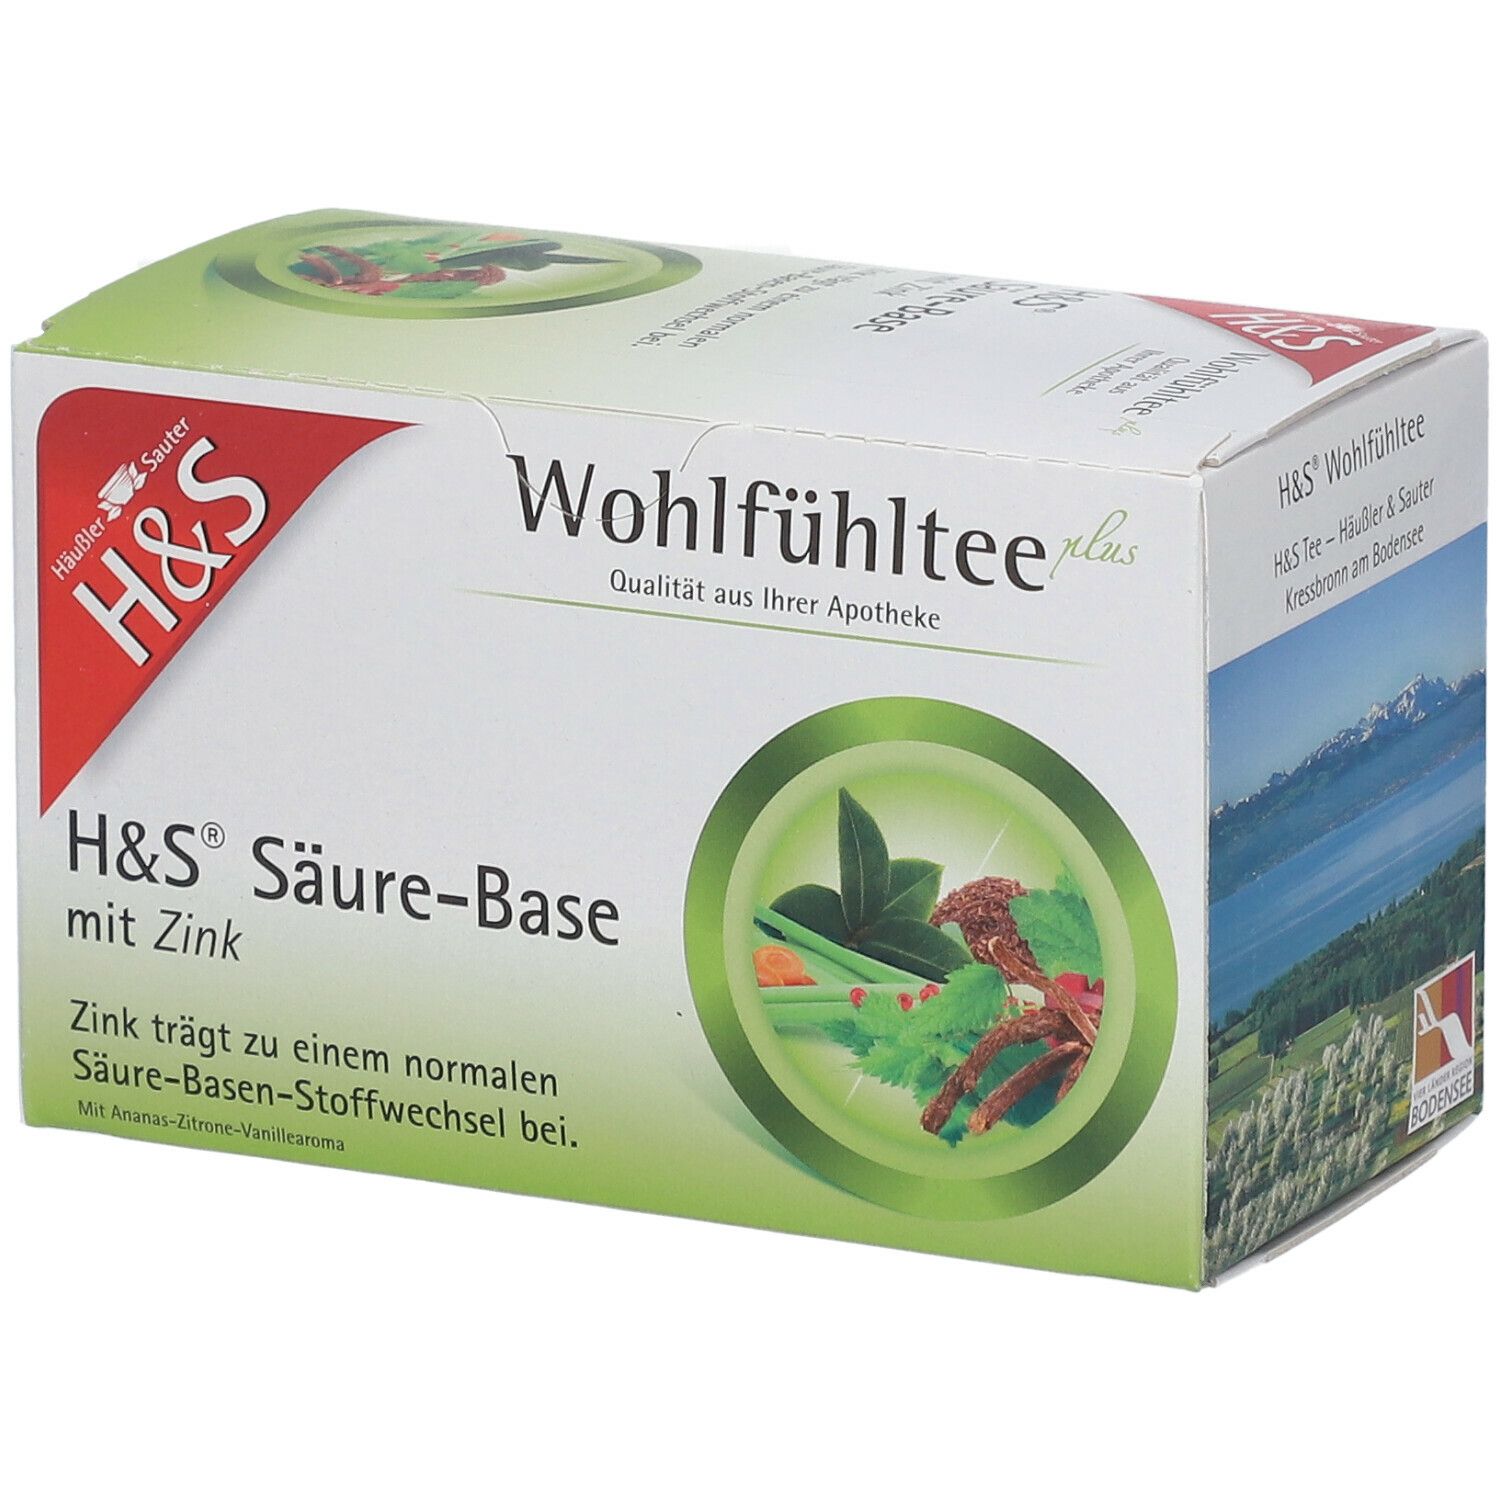 H&S® Säure-Basentee mit Zink